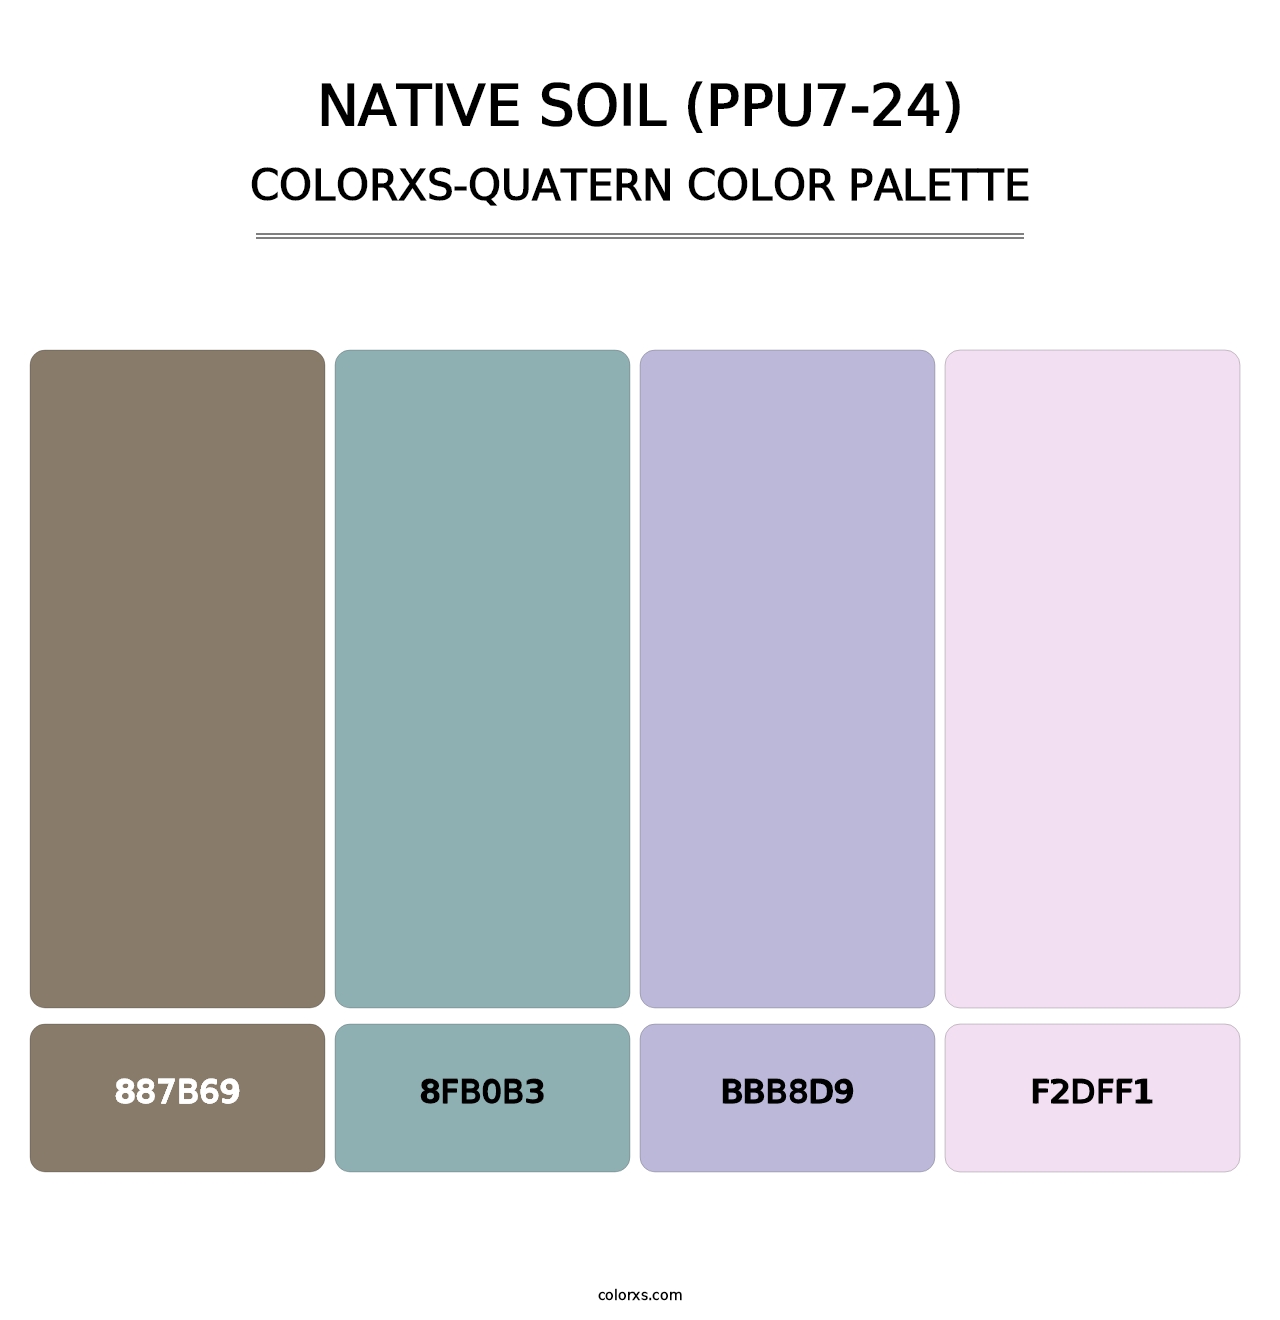 Native Soil (PPU7-24) - Colorxs Quatern Palette